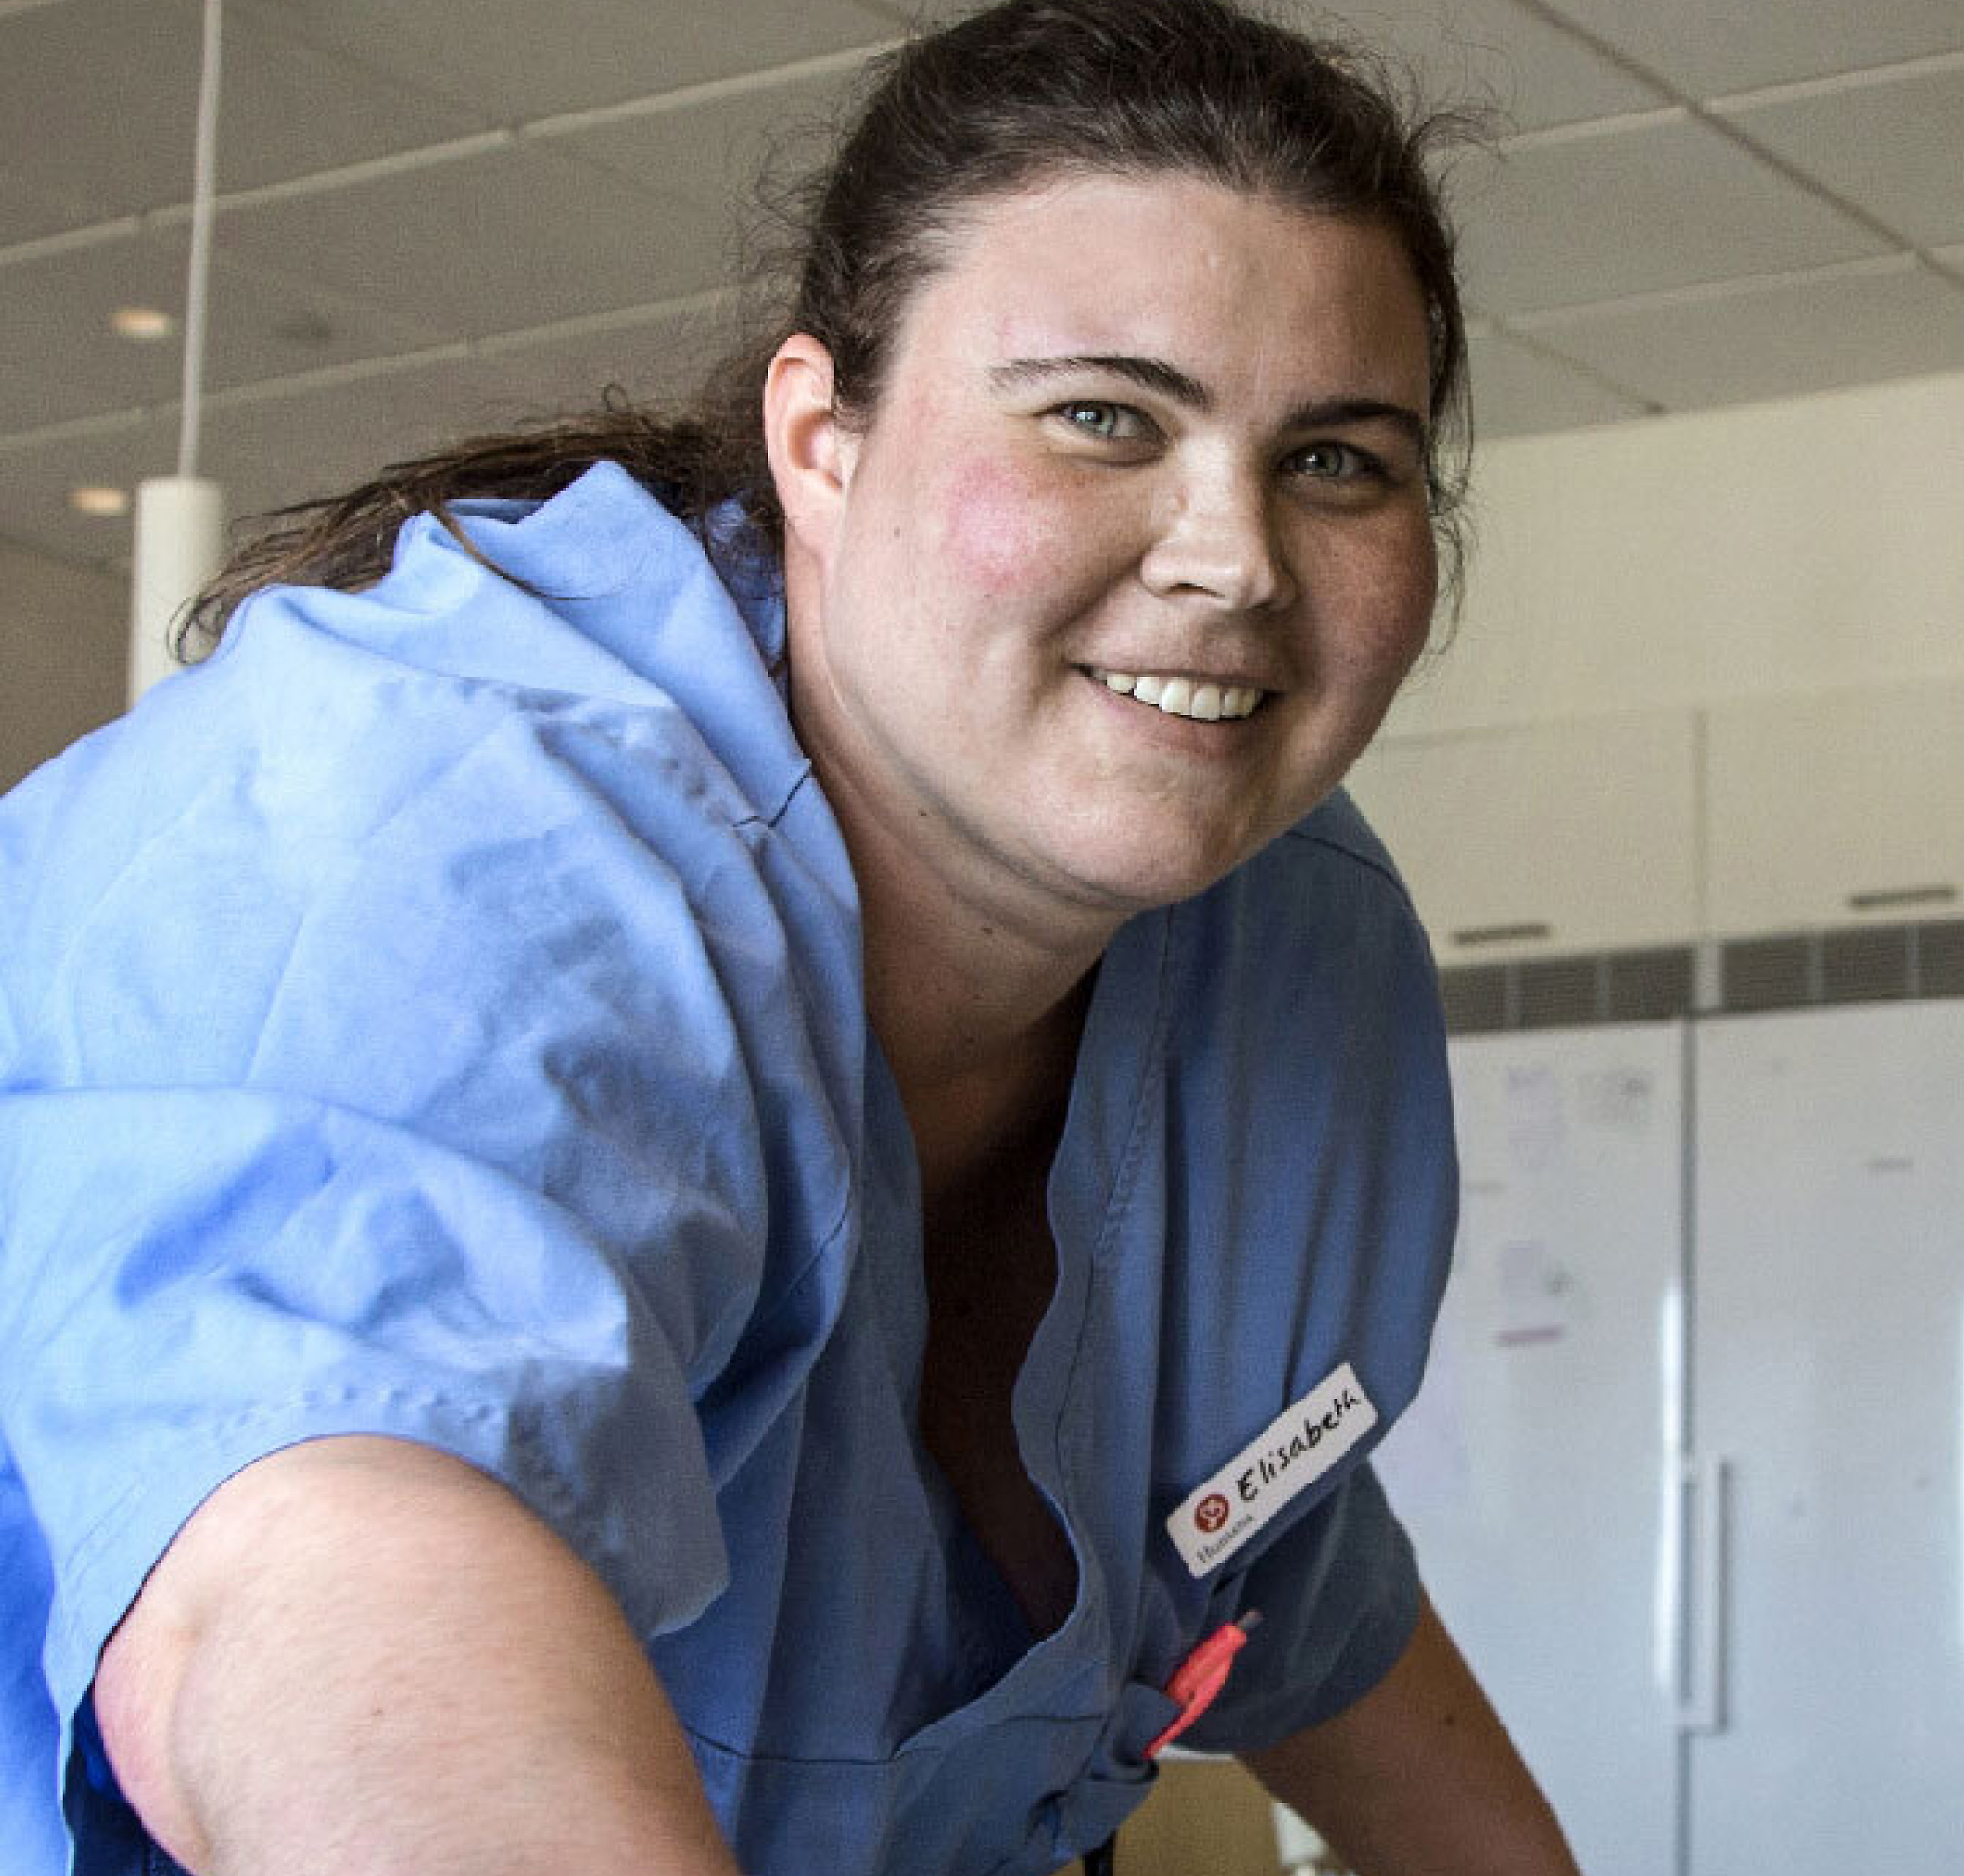 O asistentă cu un ecuson marcat cu „elizabeth” zâmbind într-o uniformă albastră, într-un cadru spațios și luminos de spital.